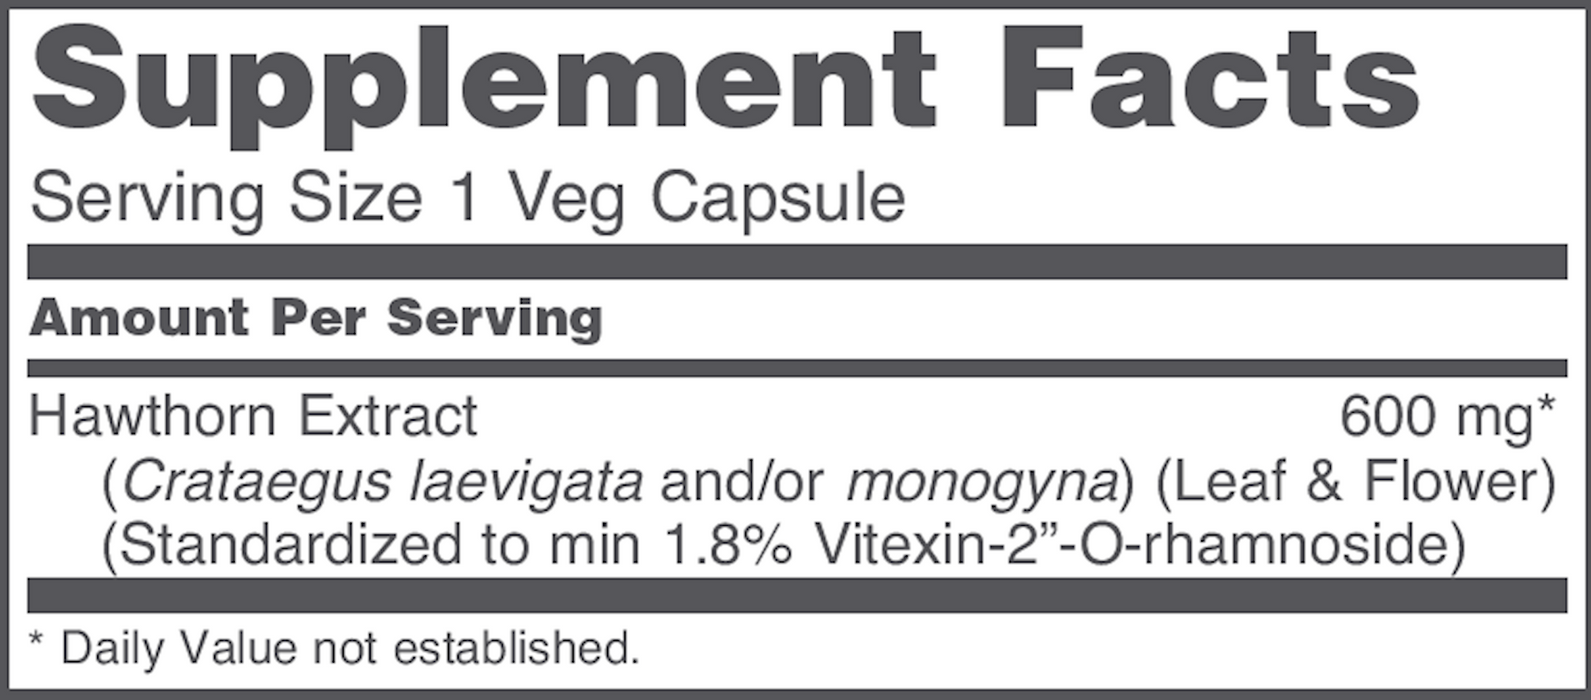 Protocol For Life Balance Hawthorn Extract 600 mg 60 vegcaps